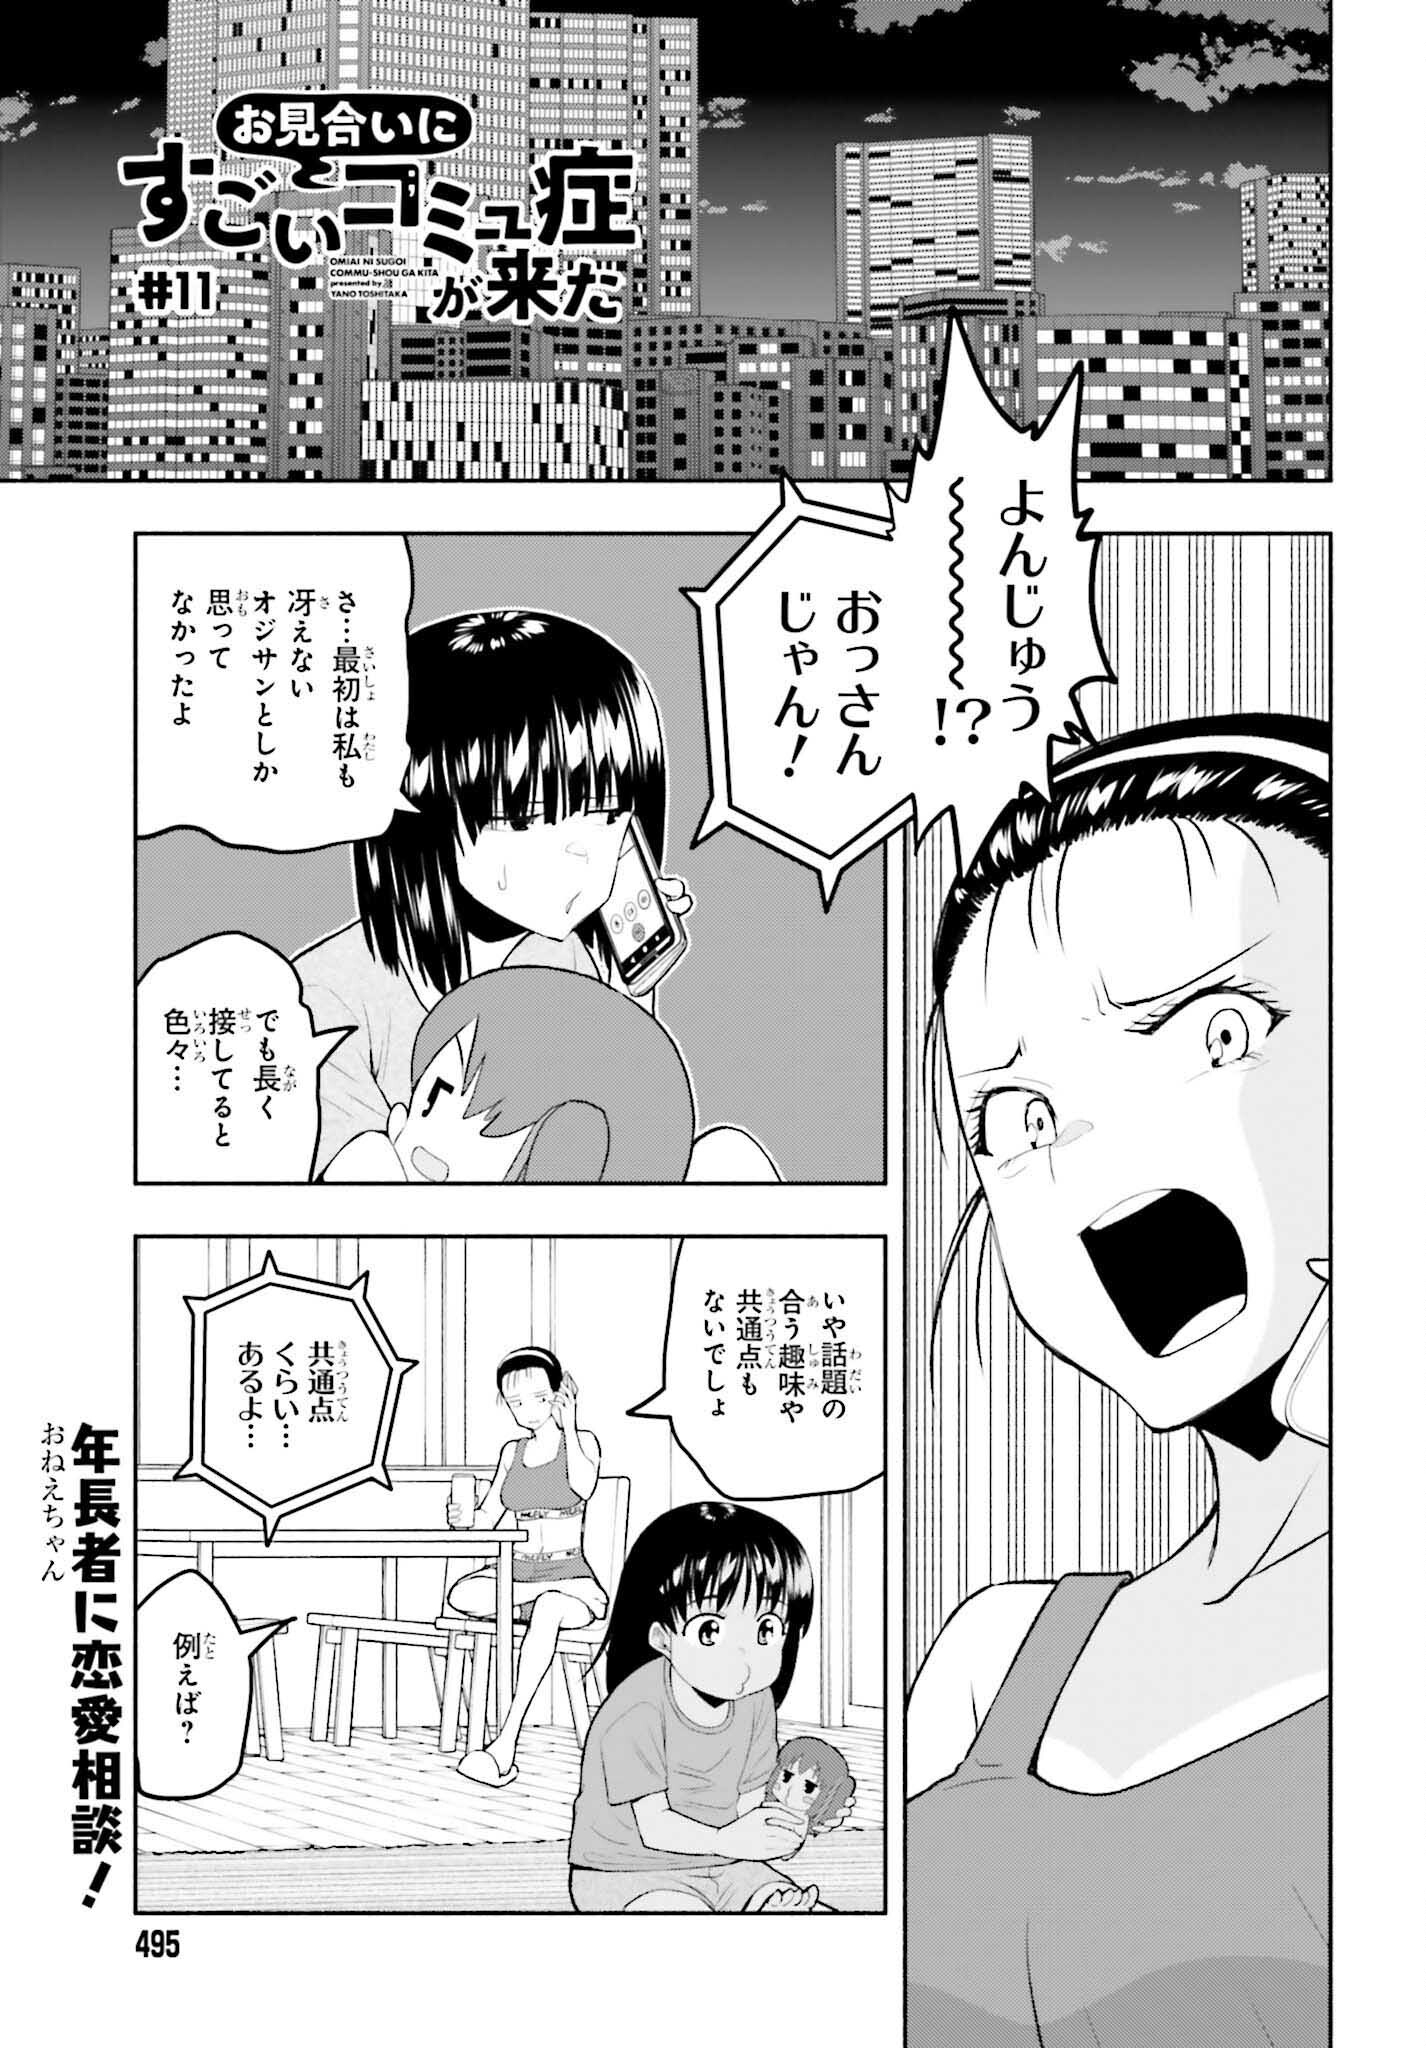 Omiai ni Sugoi Komyushou ga Kita - Chapter 11 - Page 1